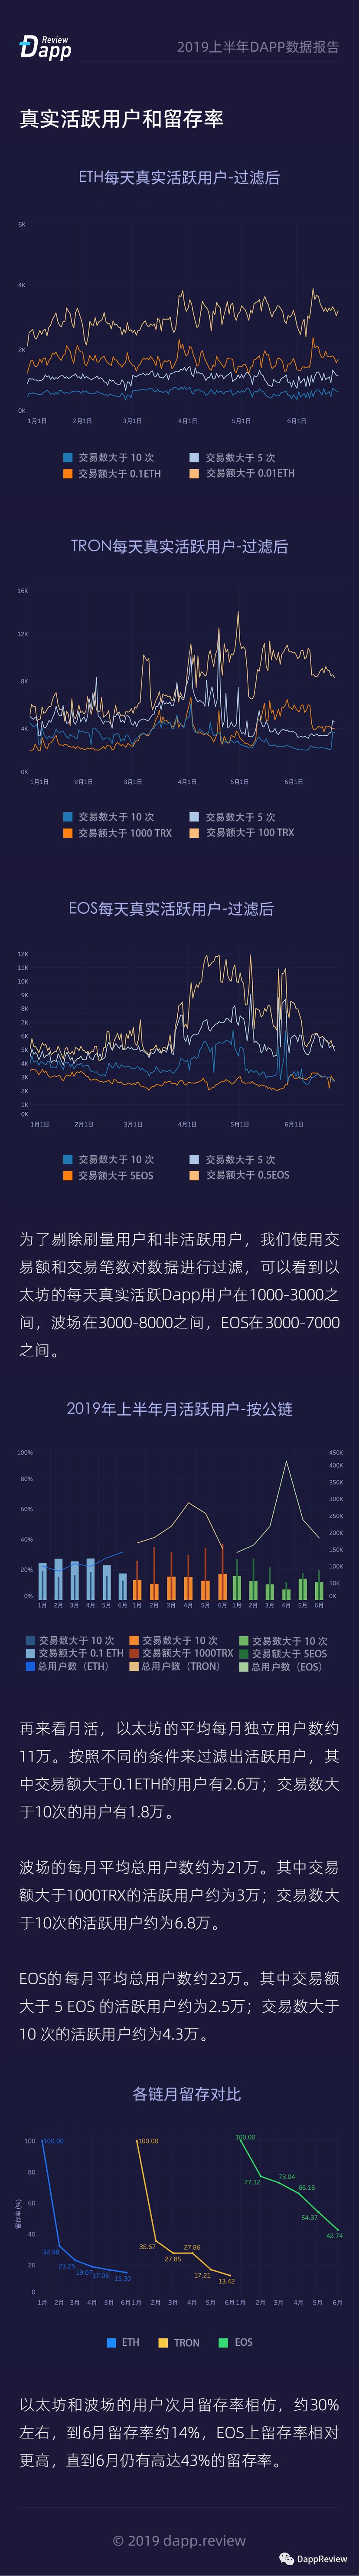 总交易额111亿美金 |2019上半年Dapp数据报告配图(6)